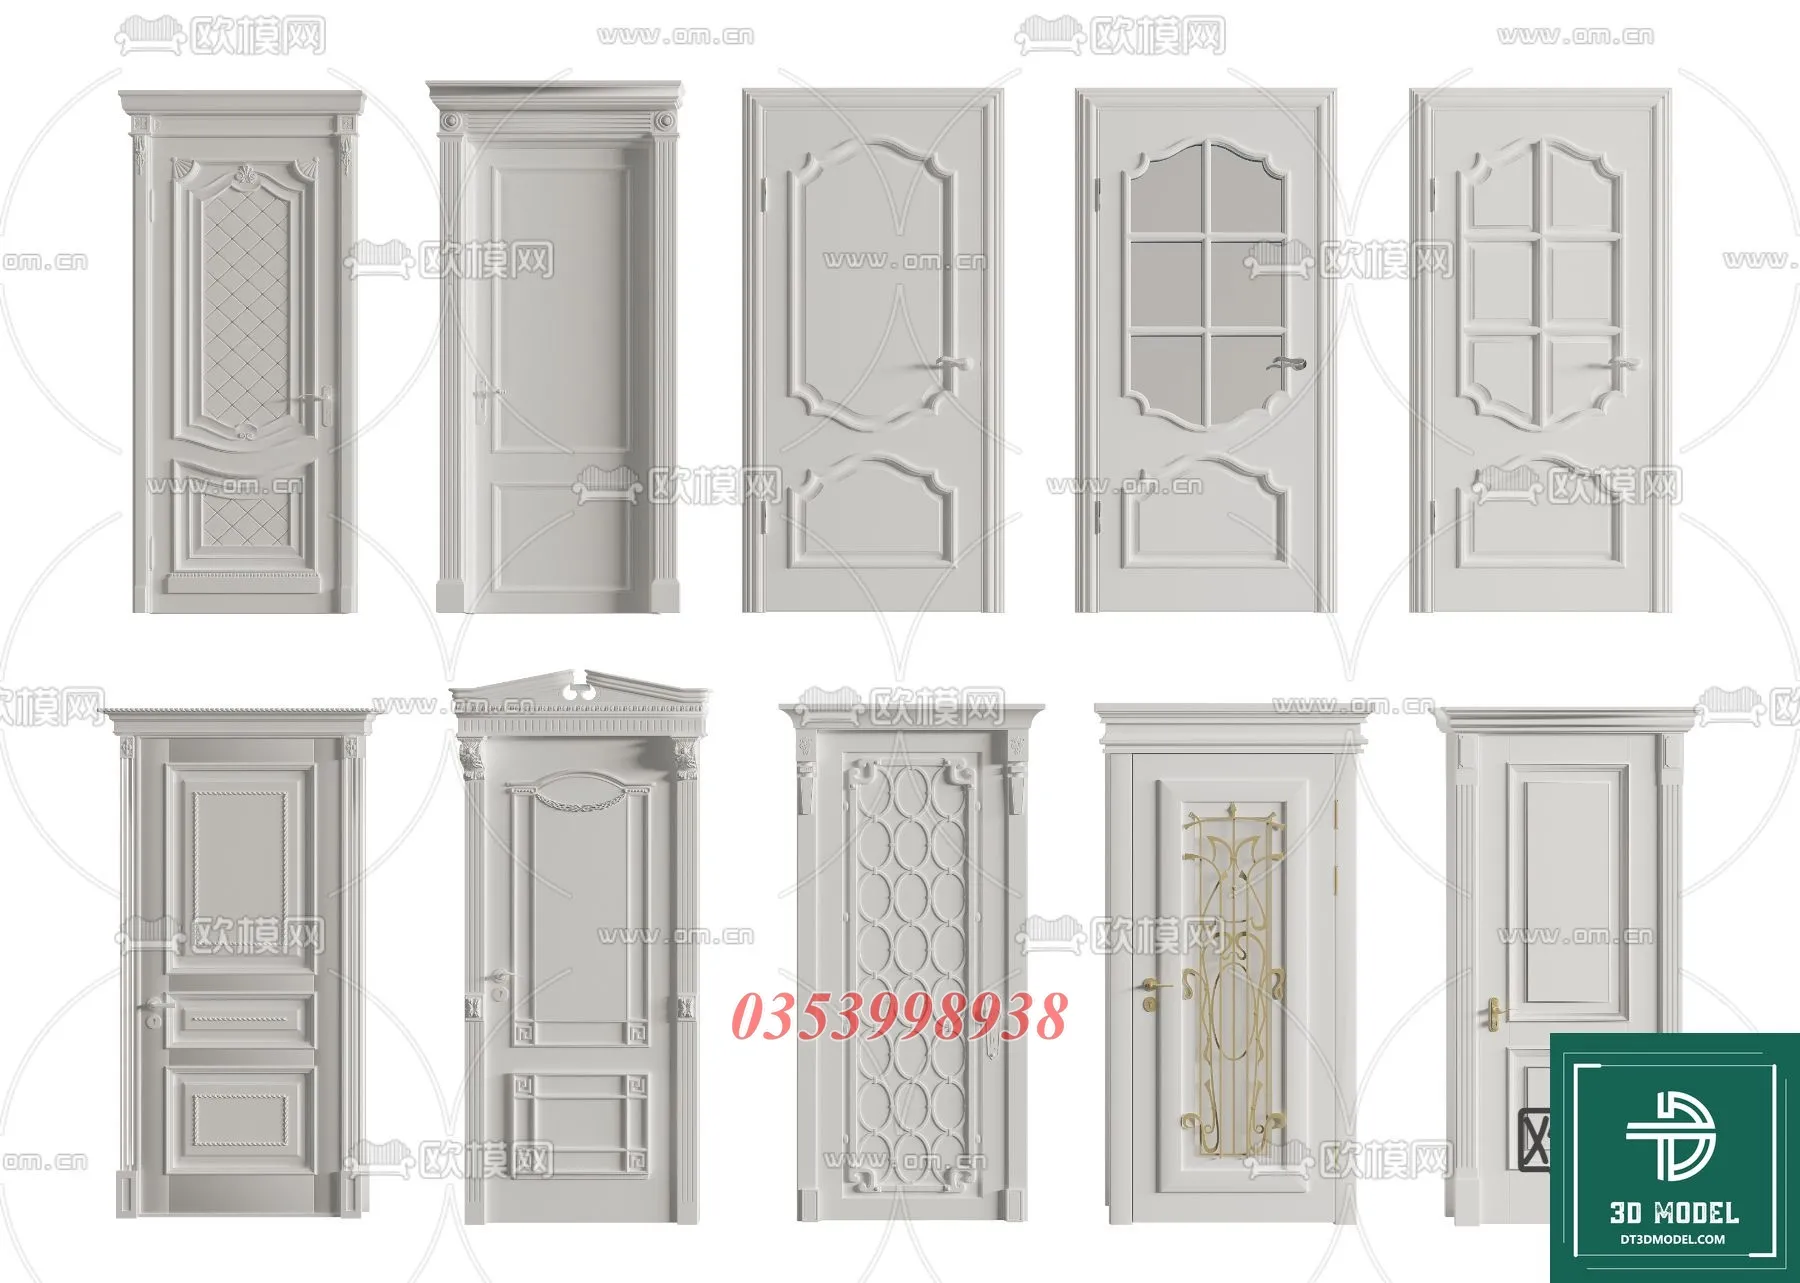 CLASSIC DOOR – 3dsmax MODELS – 118